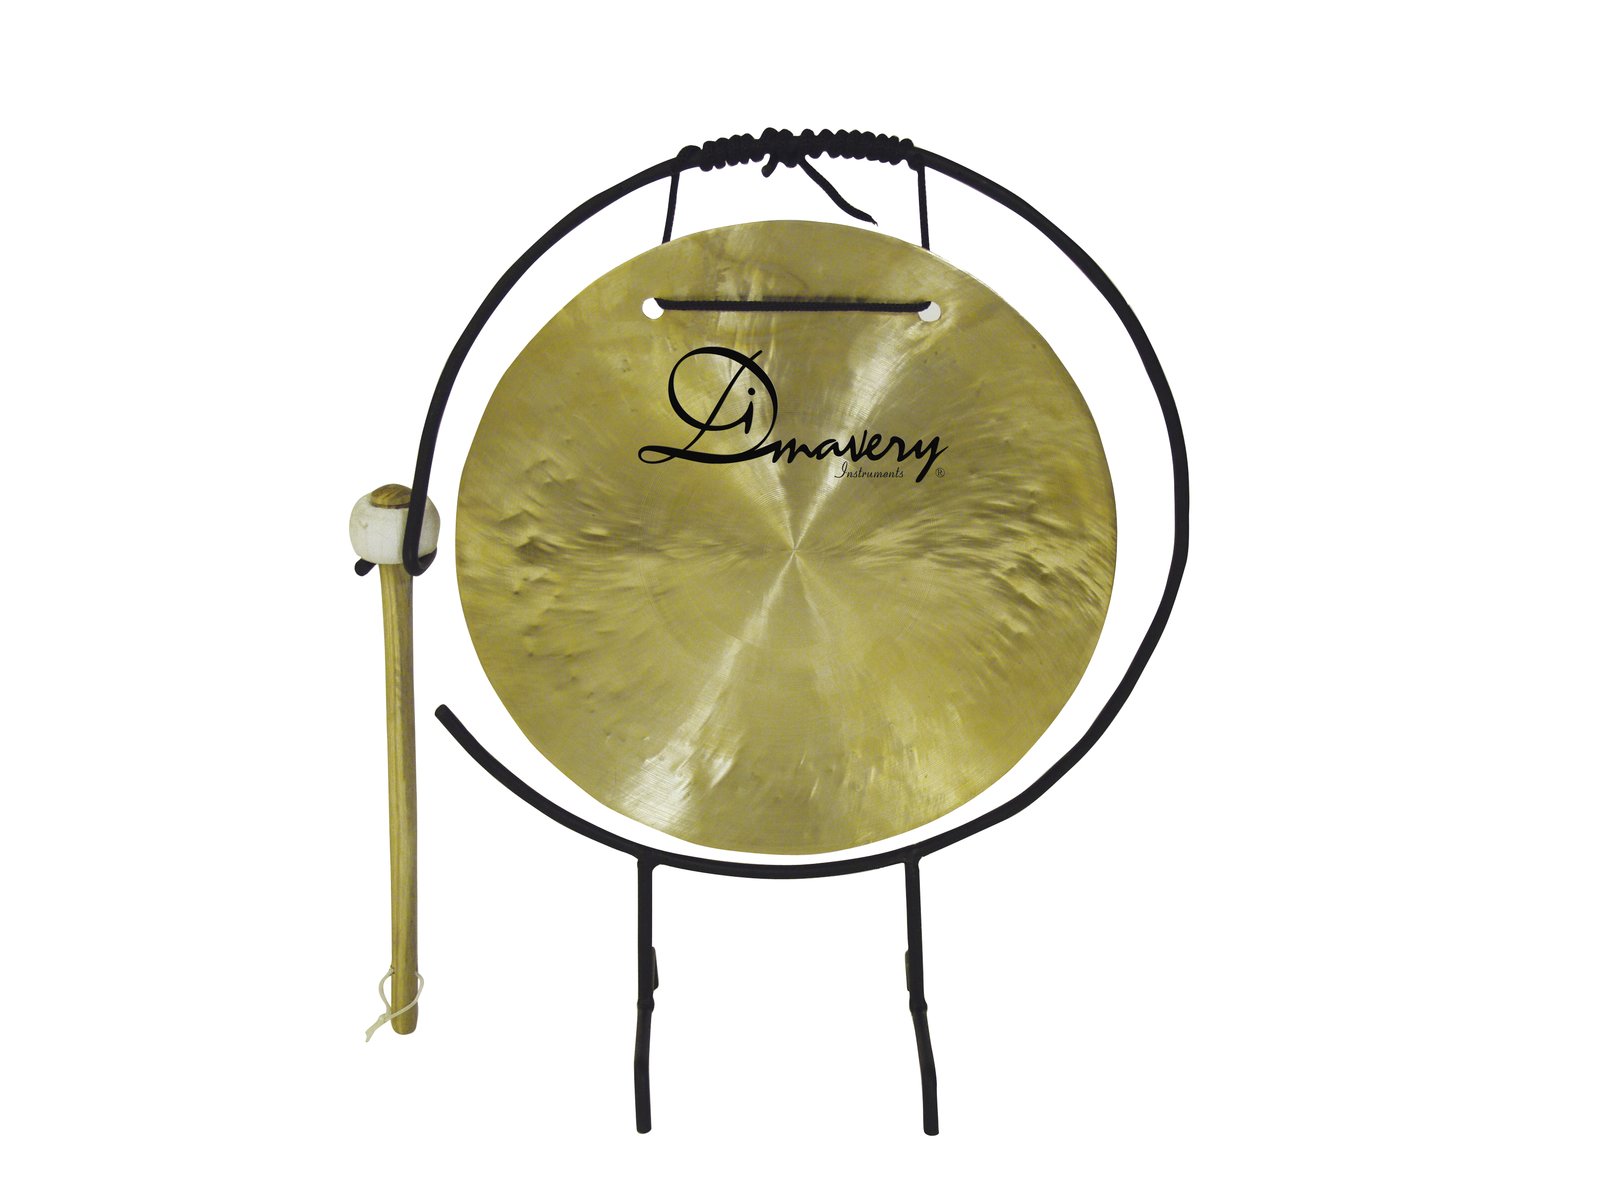 DIMAVERY Gong, 25cm mit Ständer/Klöppel